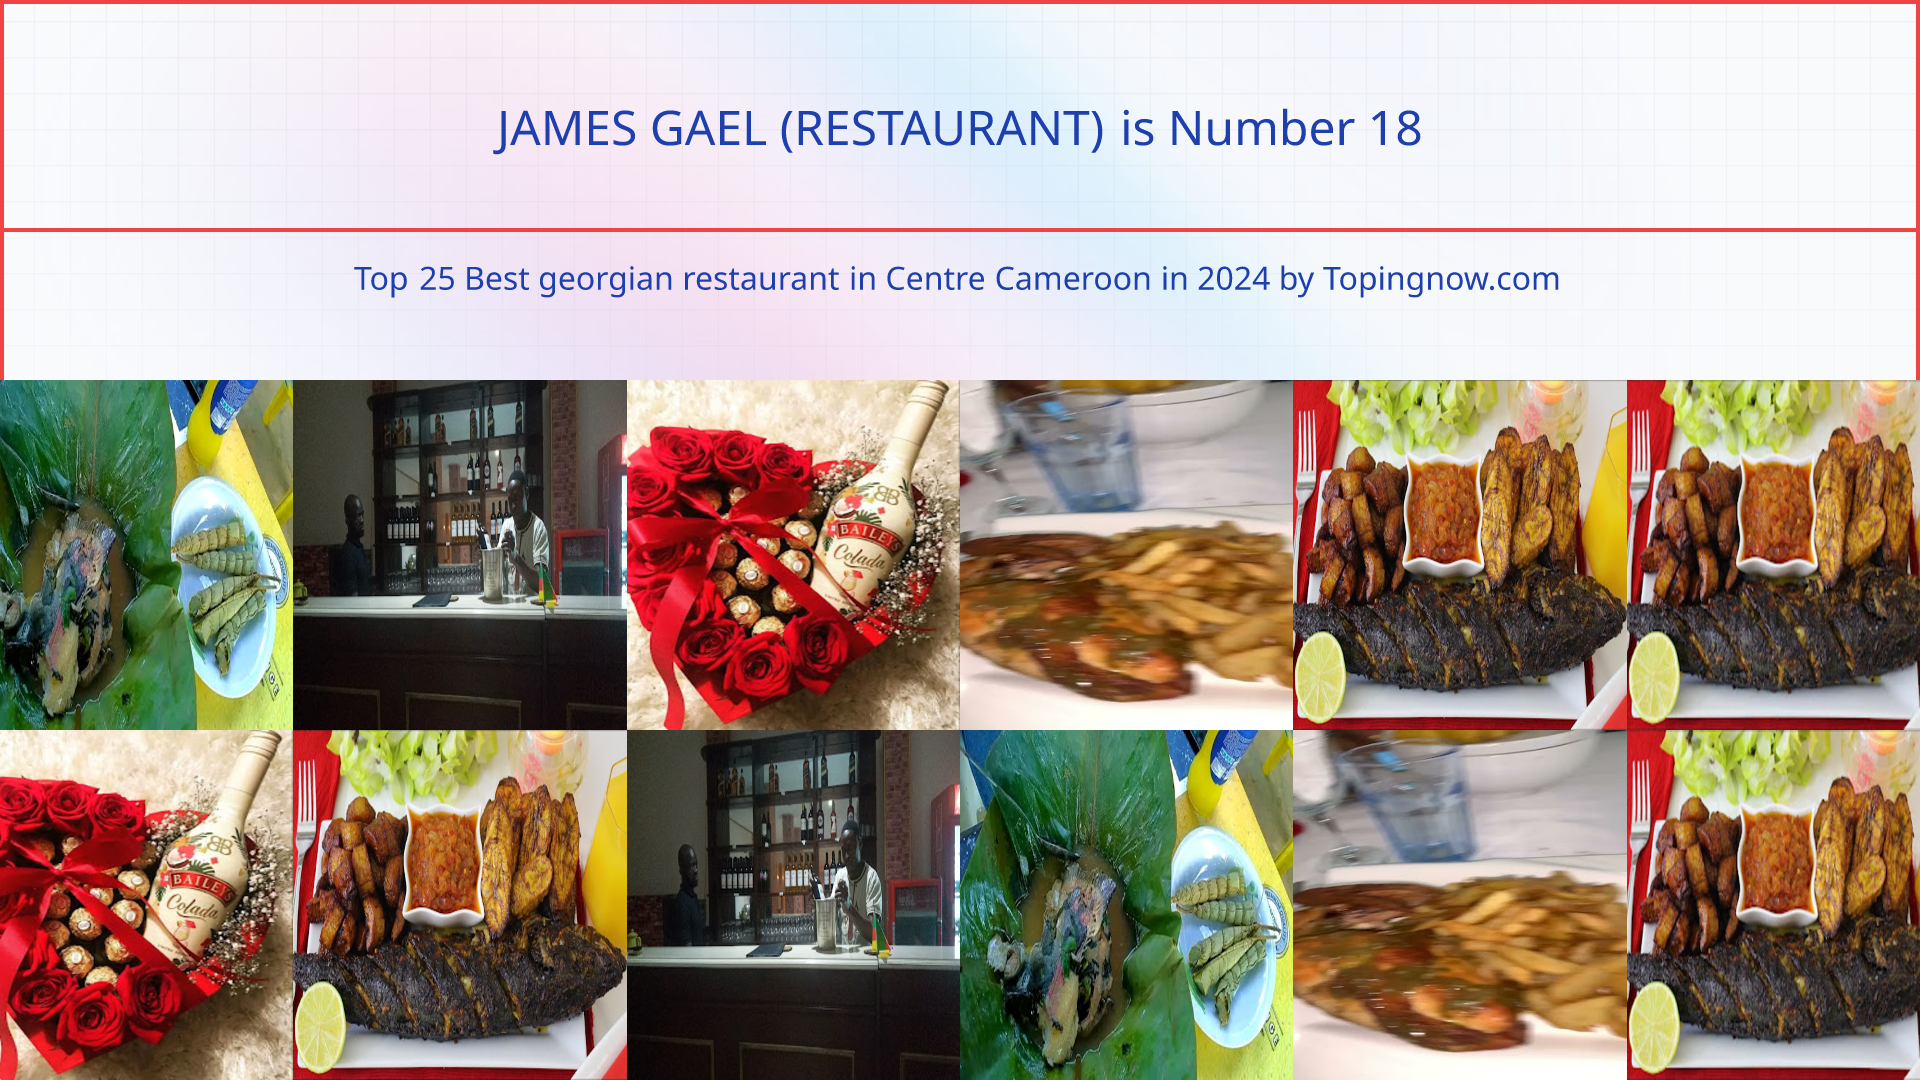 JAMES GAEL (RESTAURANT): Top 25 Best georgian restaurant in Centre Cameroon in 2024